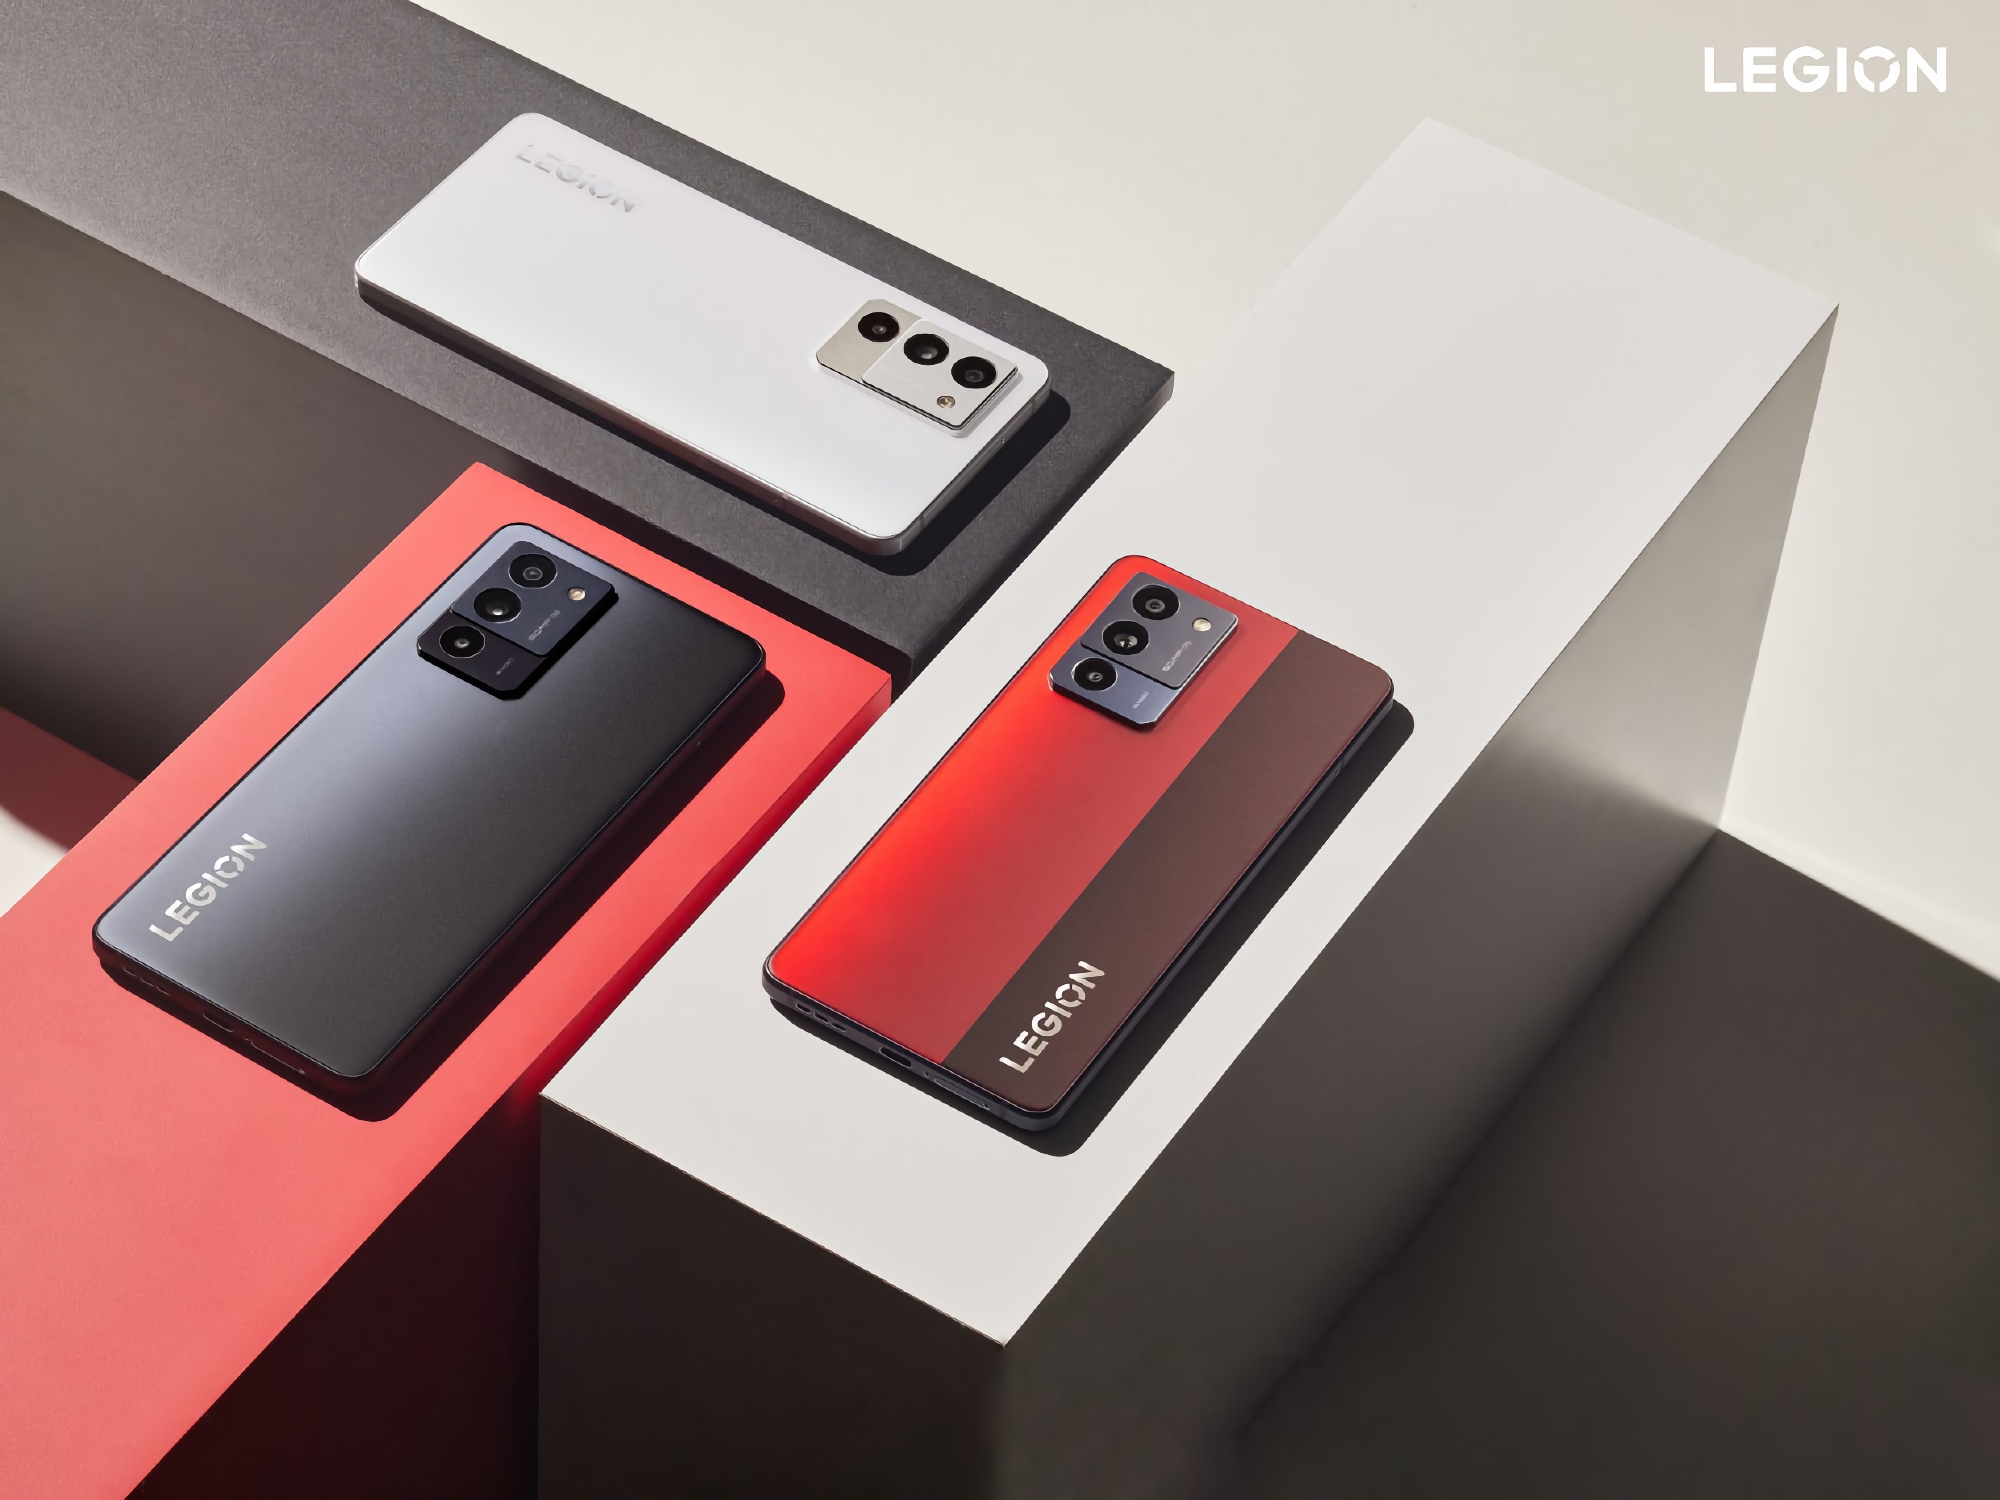 Un insider ha declassificato l'aspetto del Lenovo Legion Y70: uno smartphone da gaming con chip Snapdragon 8+ Gen1 e batteria da 5000 mAh